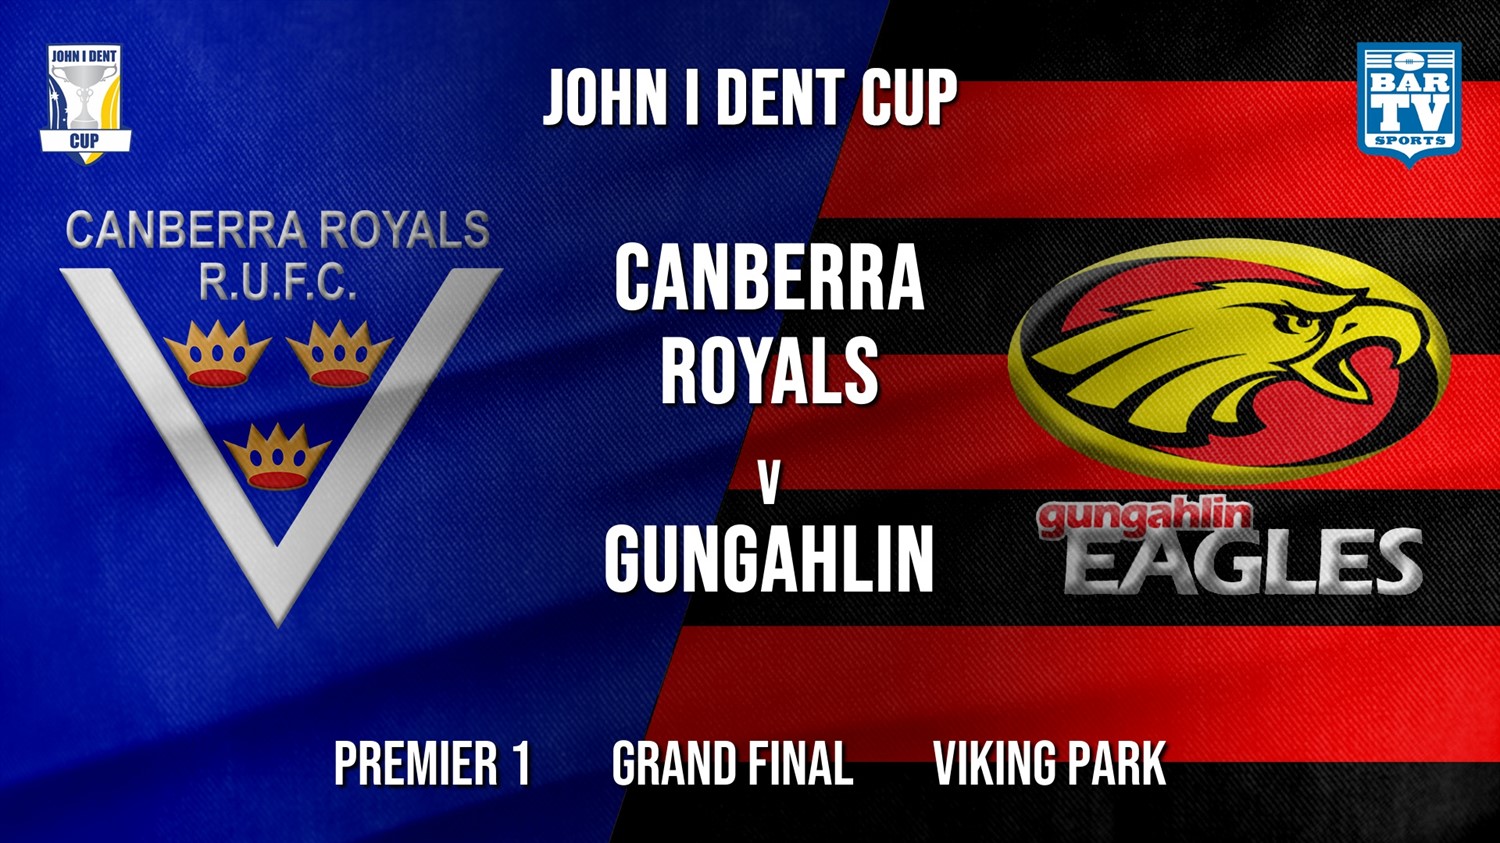 John I Dent Grand Final - Premier 1 - Canberra Royals v Gungahlin Eagles Minigame Slate Image